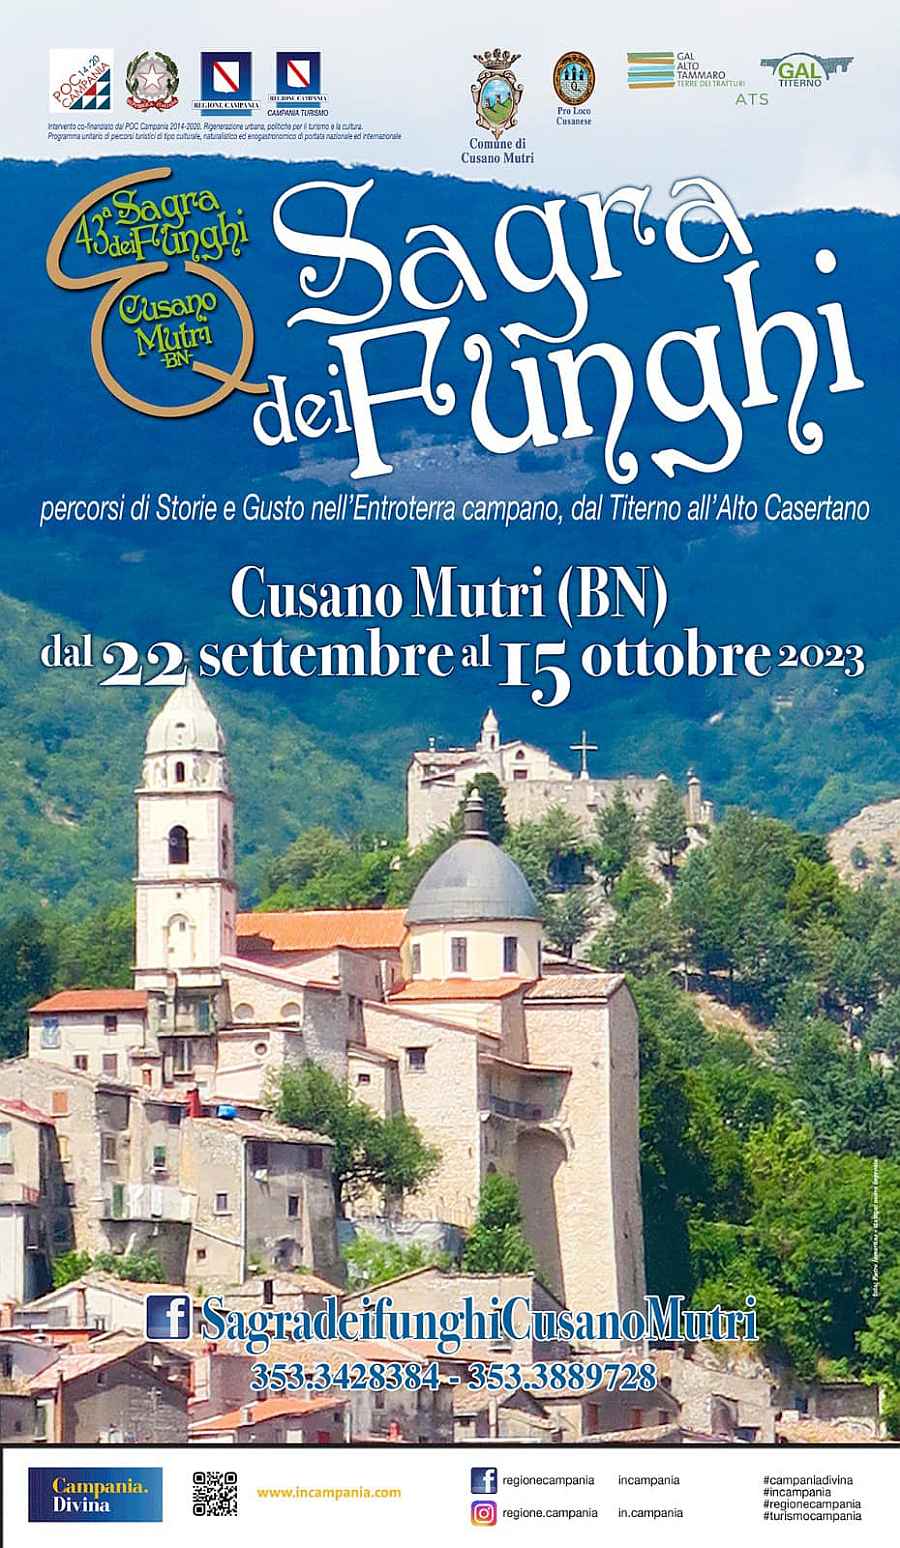 Cusano Mutri (BN)
"42^ Sagra dei Funghi"
dal 30 Settembre al 16 Ottobre 2022 